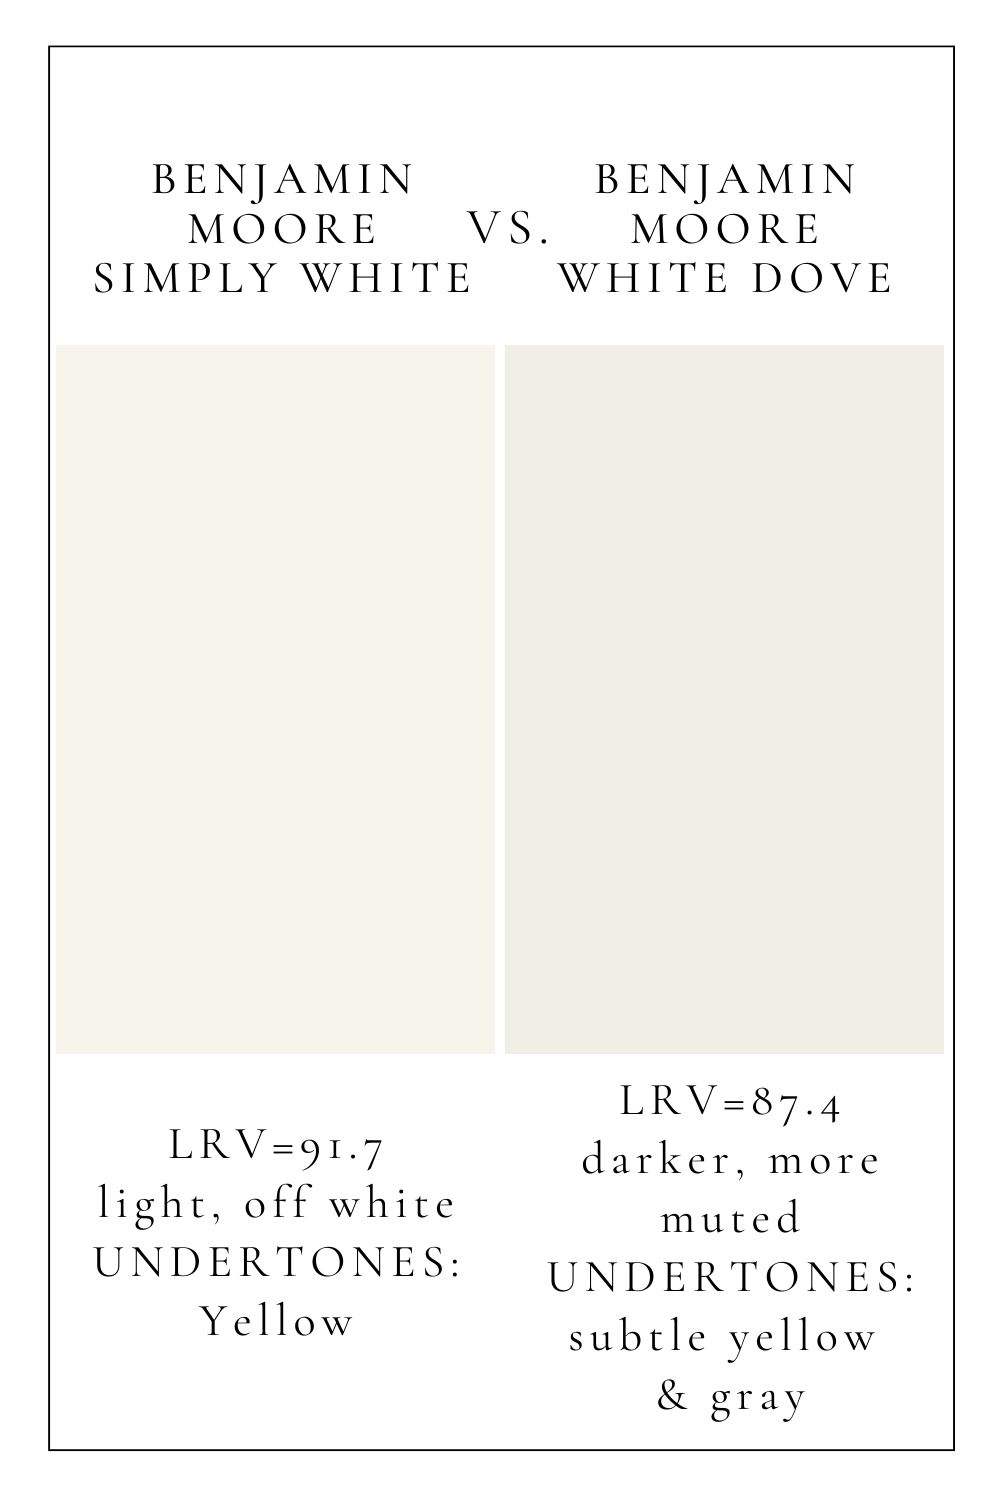 BM Simply White vs BM White dove